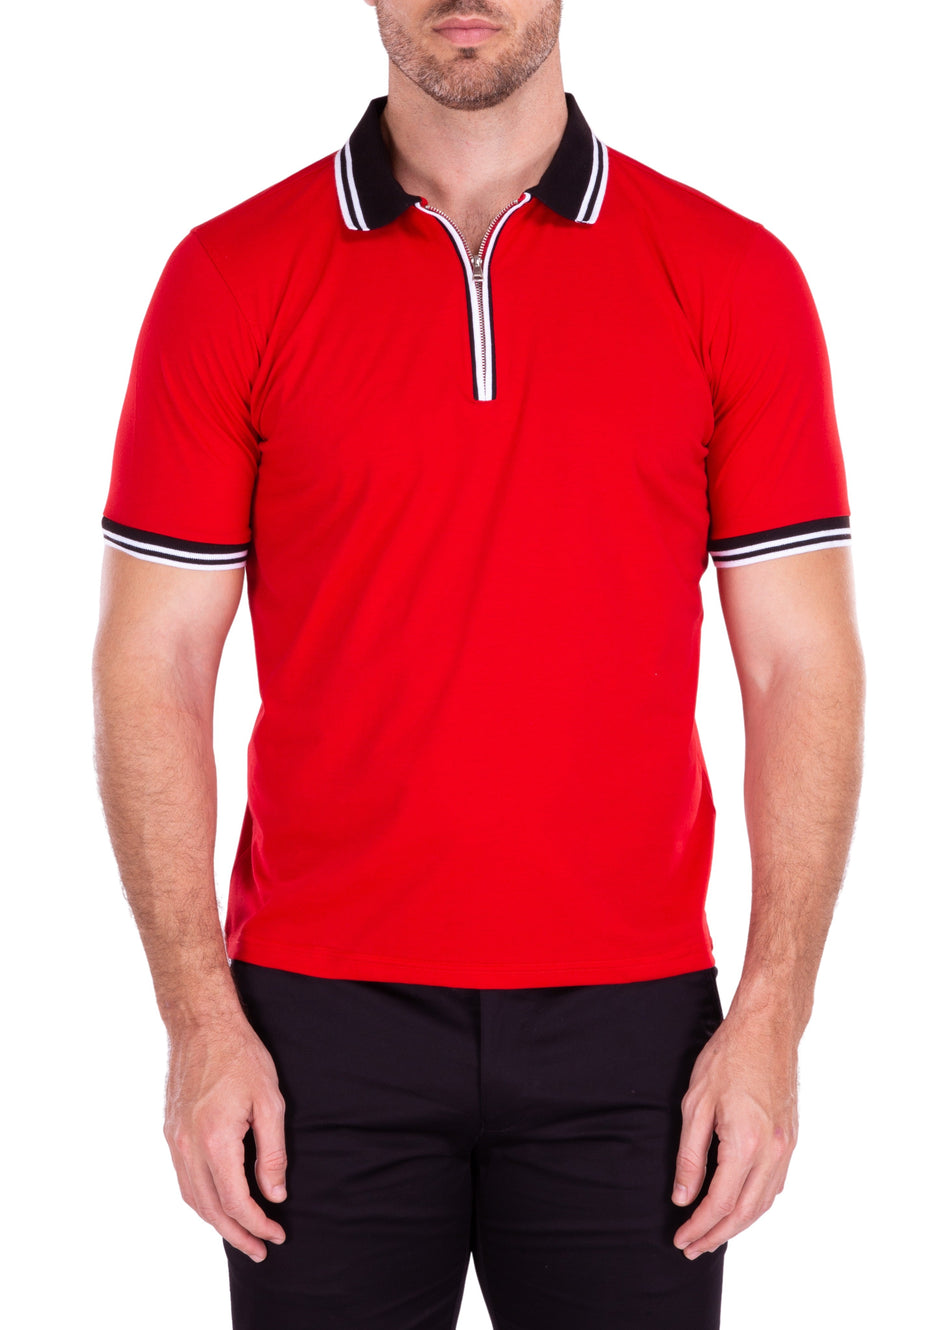 211819 - Red Zipper Polo Shirt